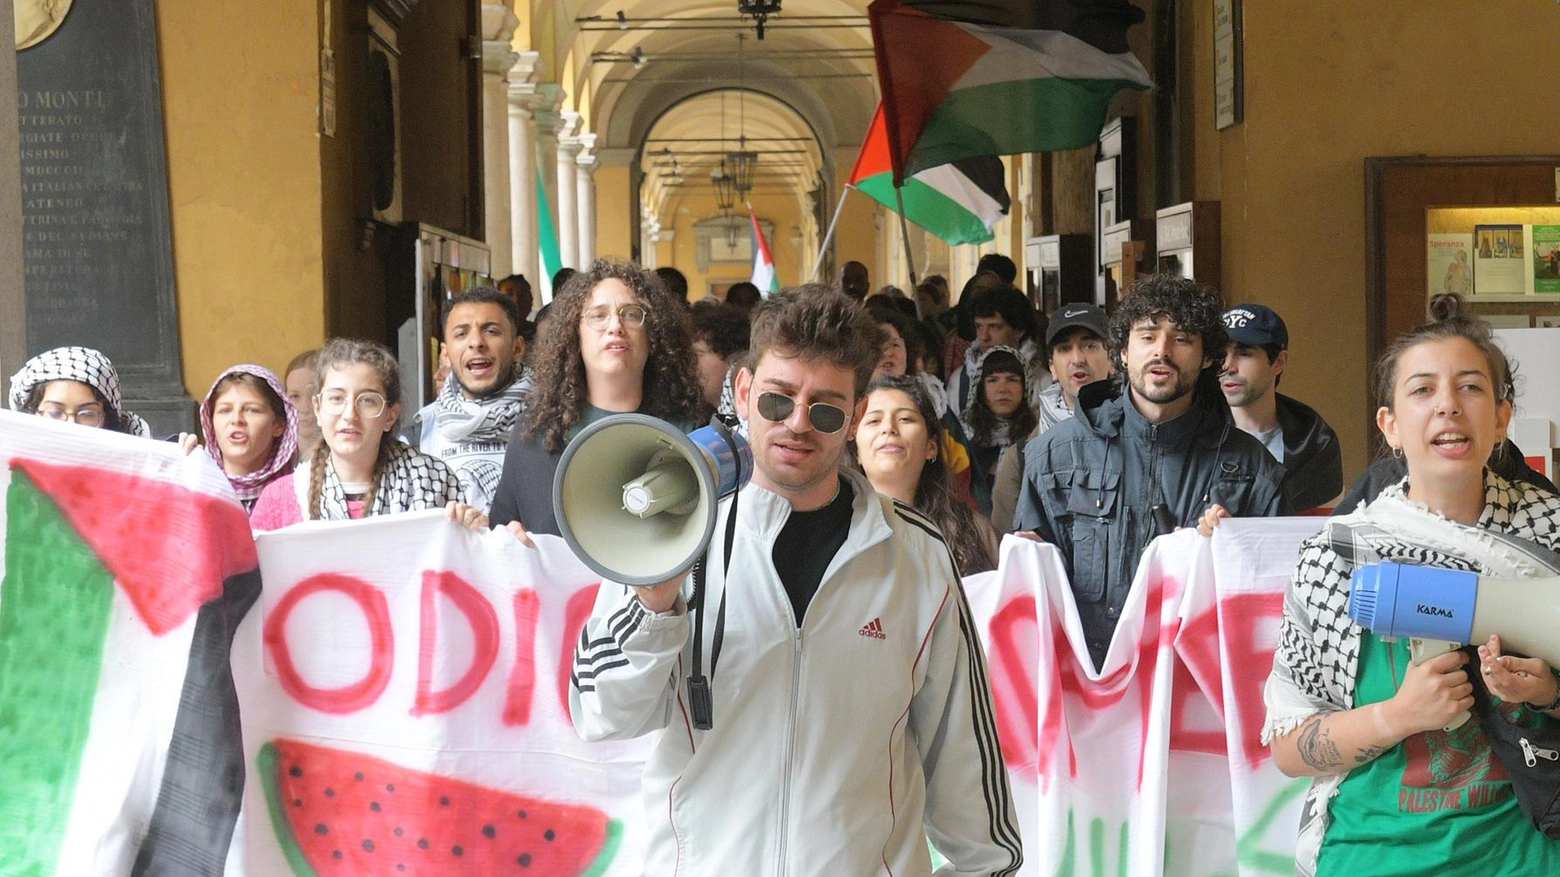 Università, protesta degli accampati: "Solo scuse, non vogliono ascoltarci"